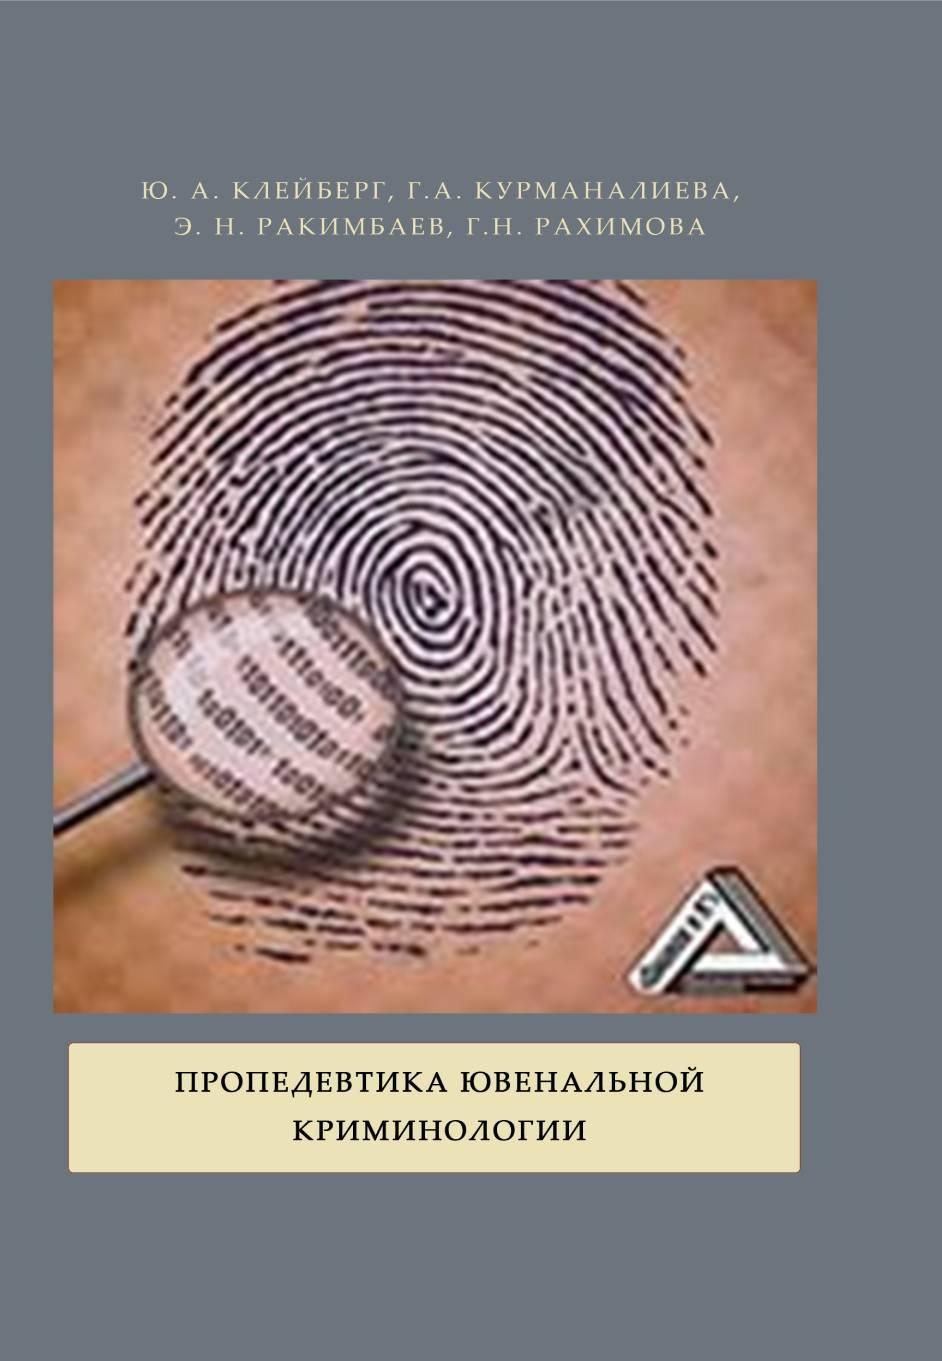 Пропедевтика ювенальной криминологии: учебникдля вузов с кейсами. – 2-е изд., перераб. и доп.